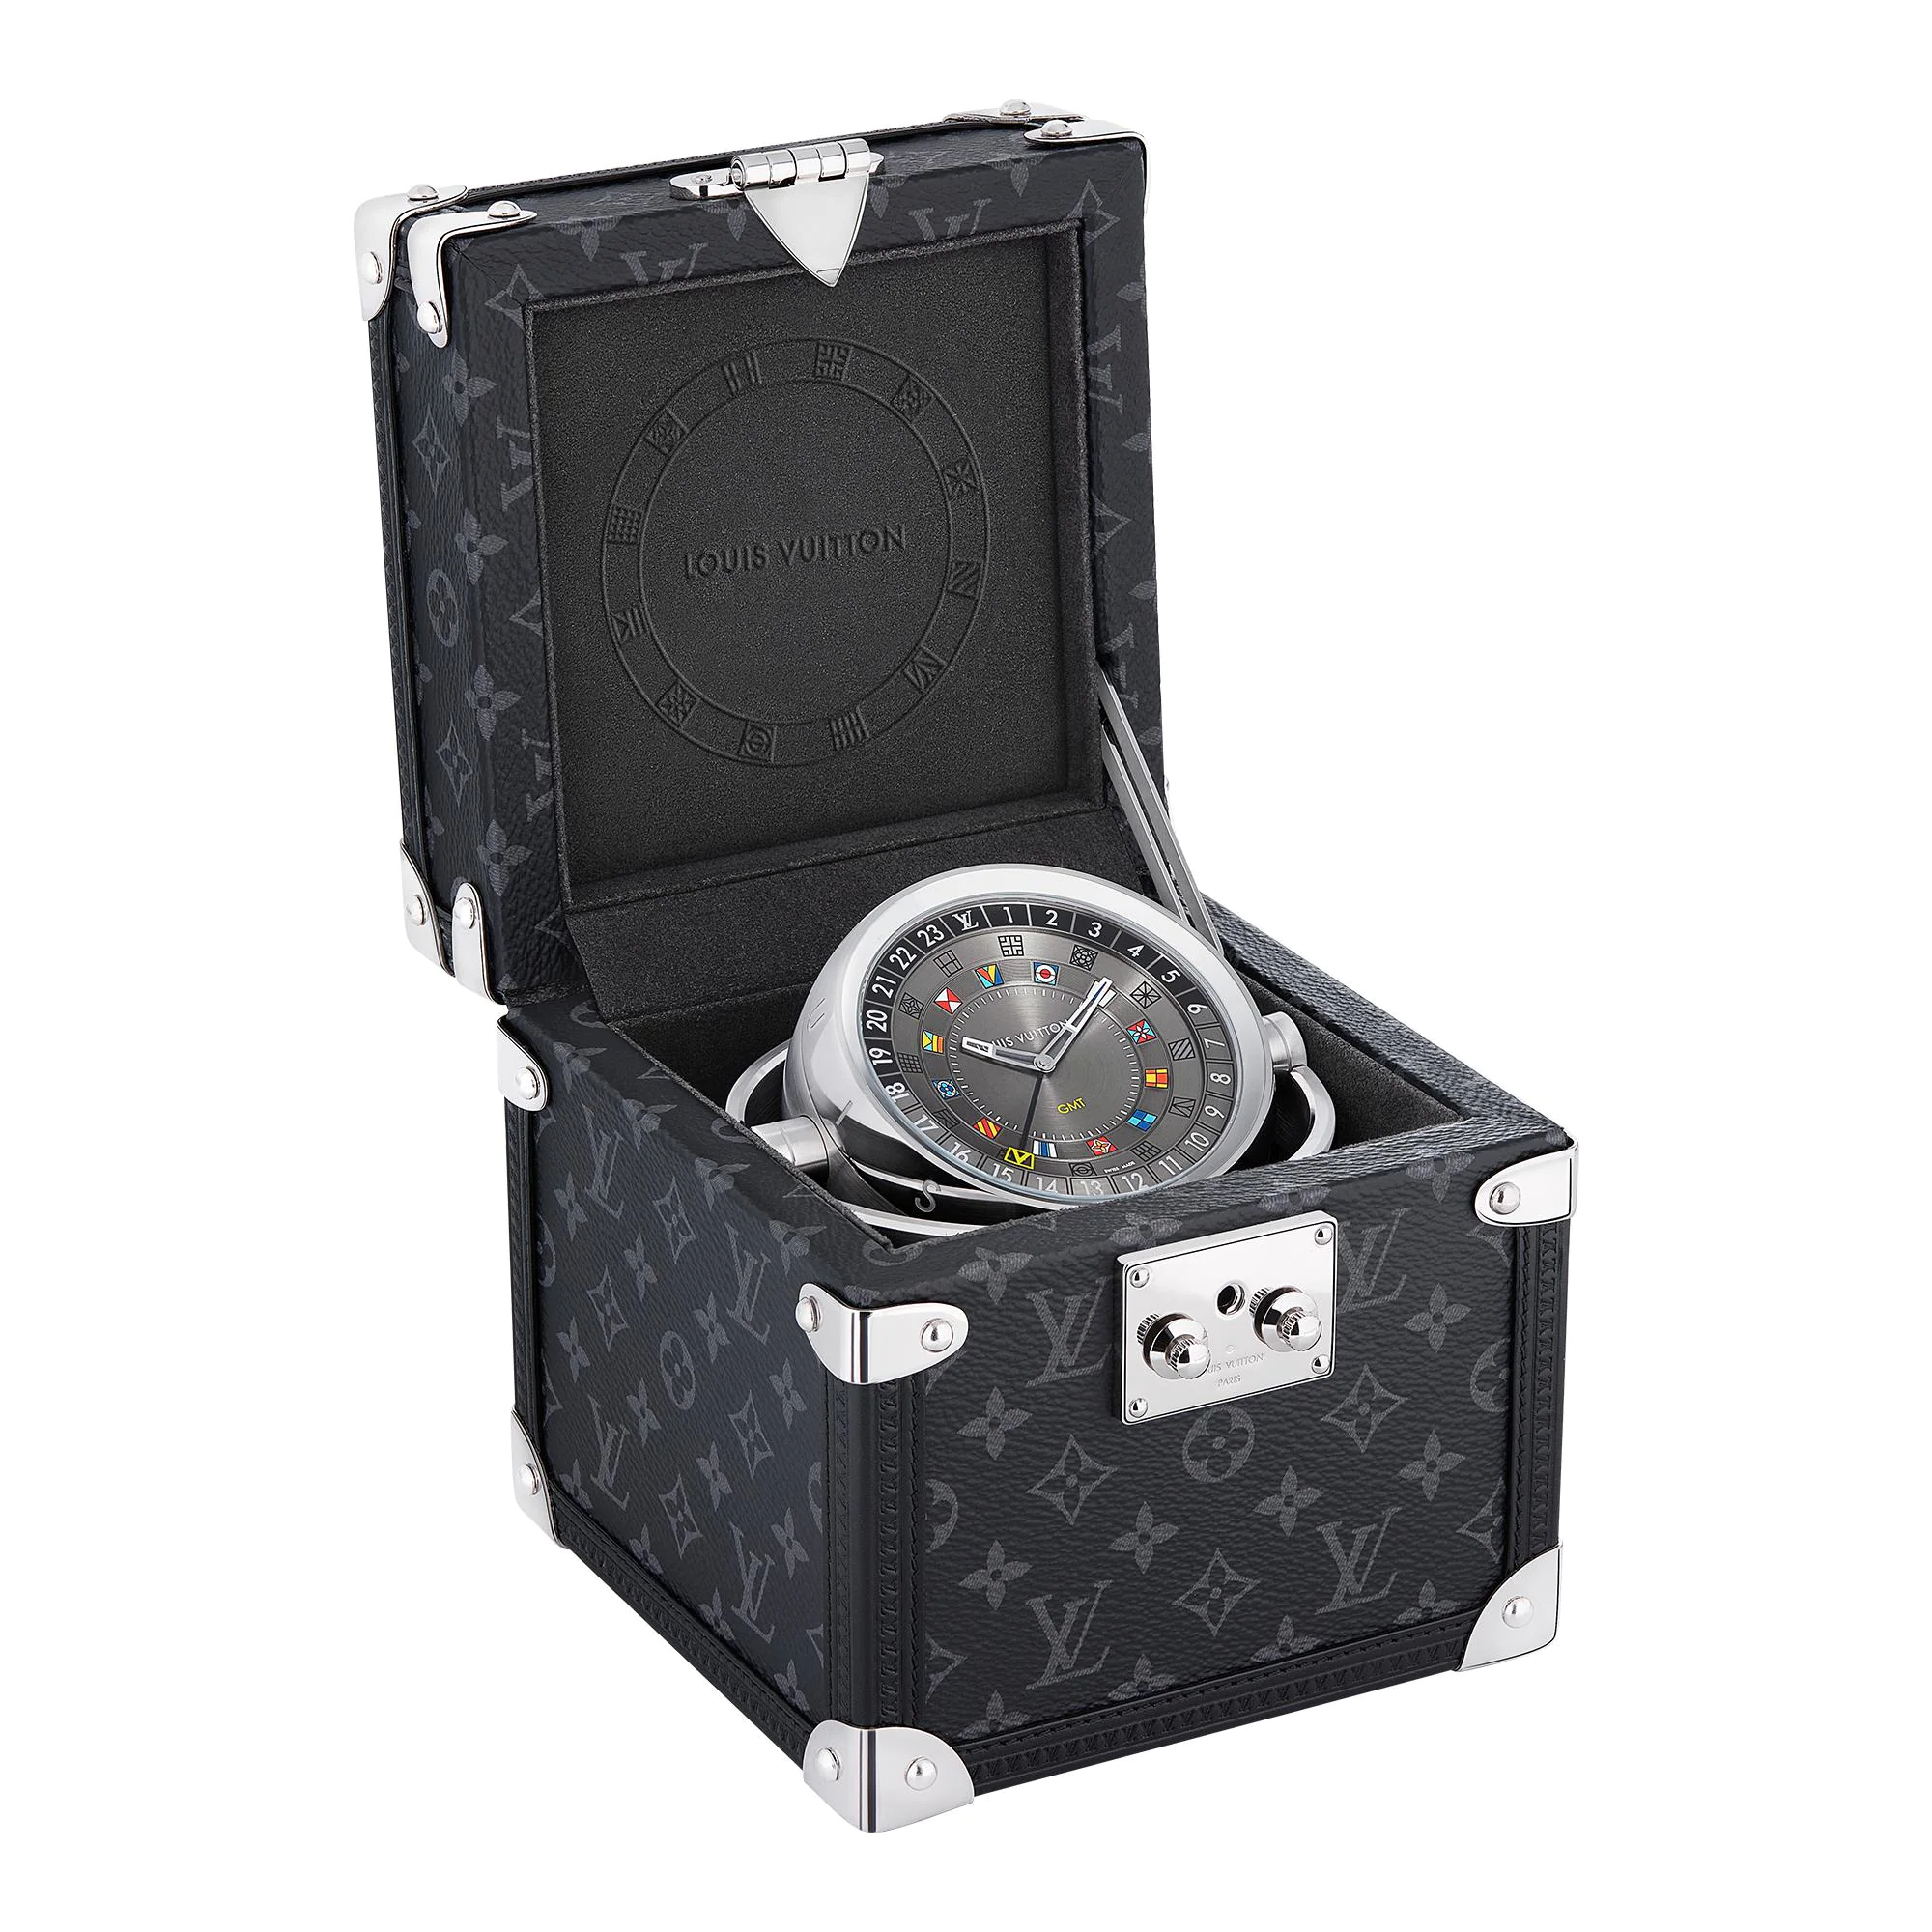 Louis Vuitton Trunk Watch 2